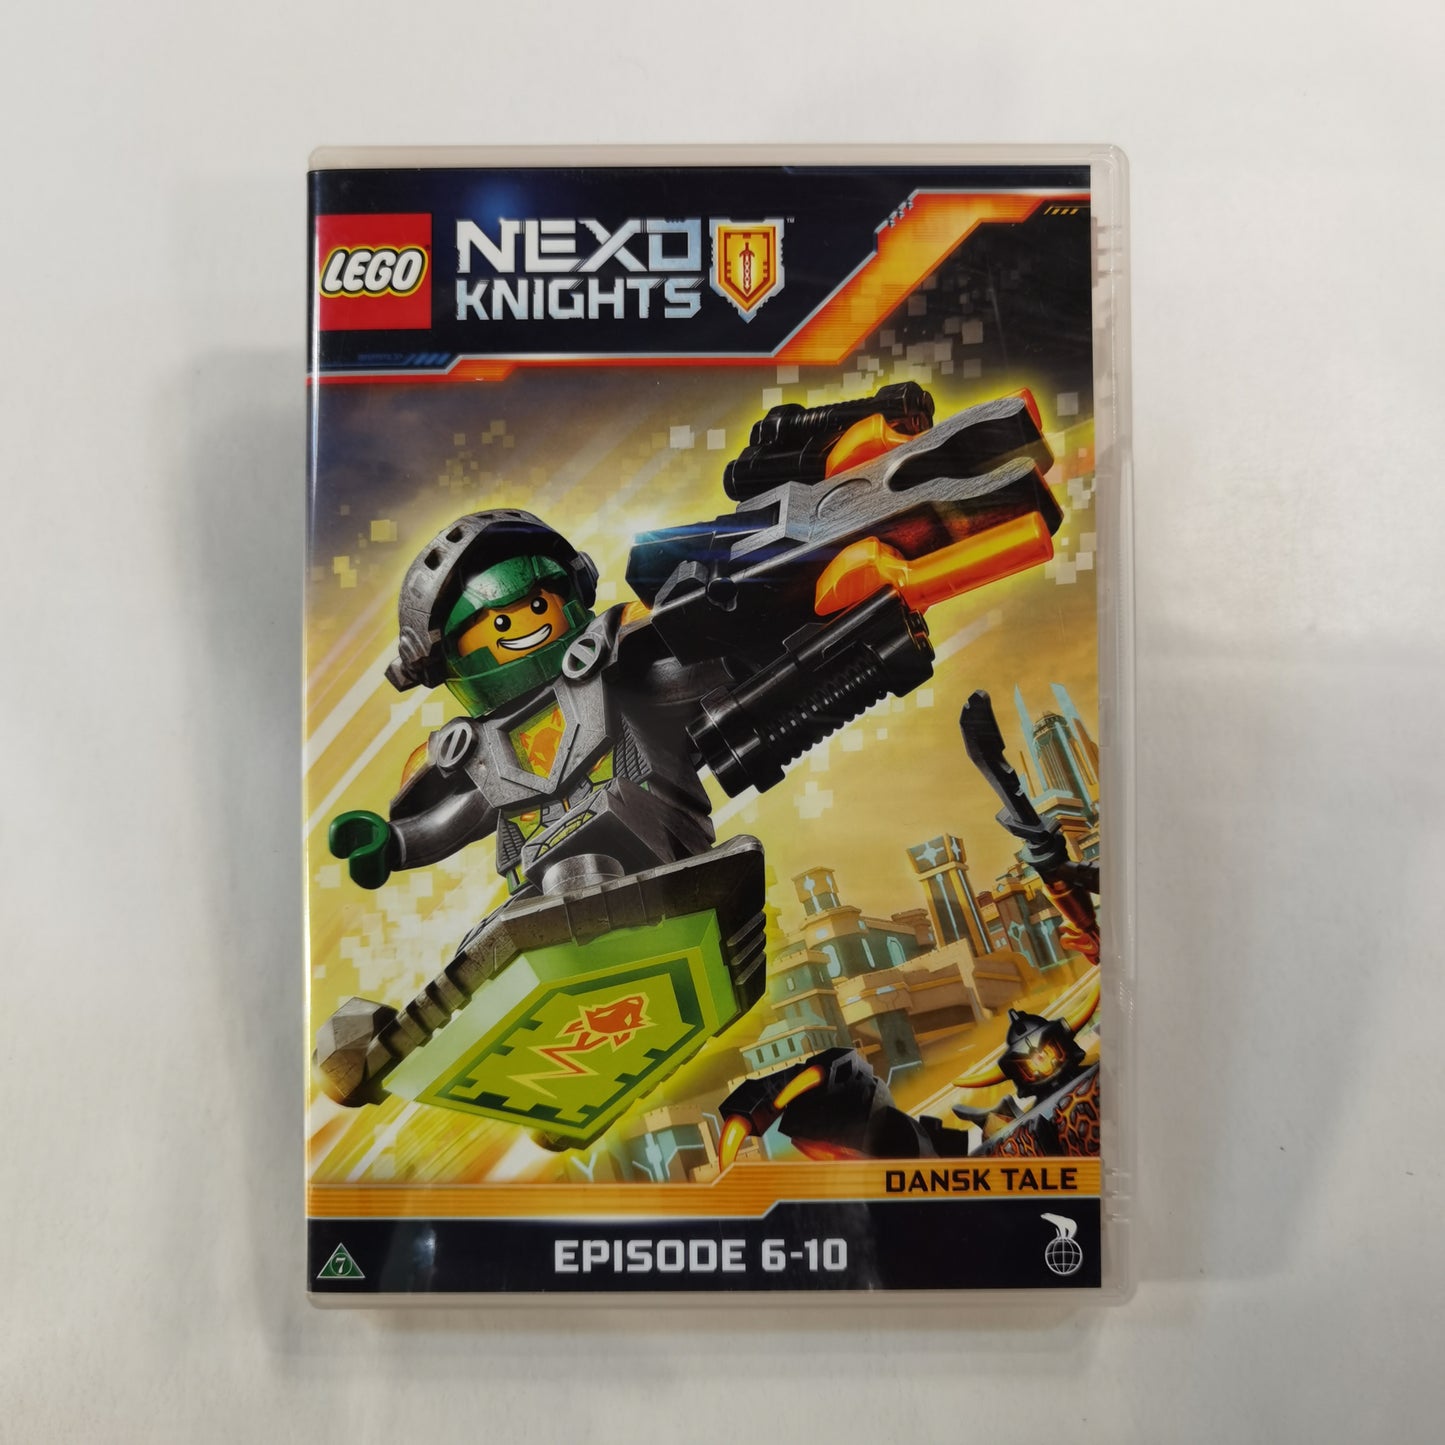 LEGO Nexo Knights: Episodes 6-10 (2016) - DVD DK